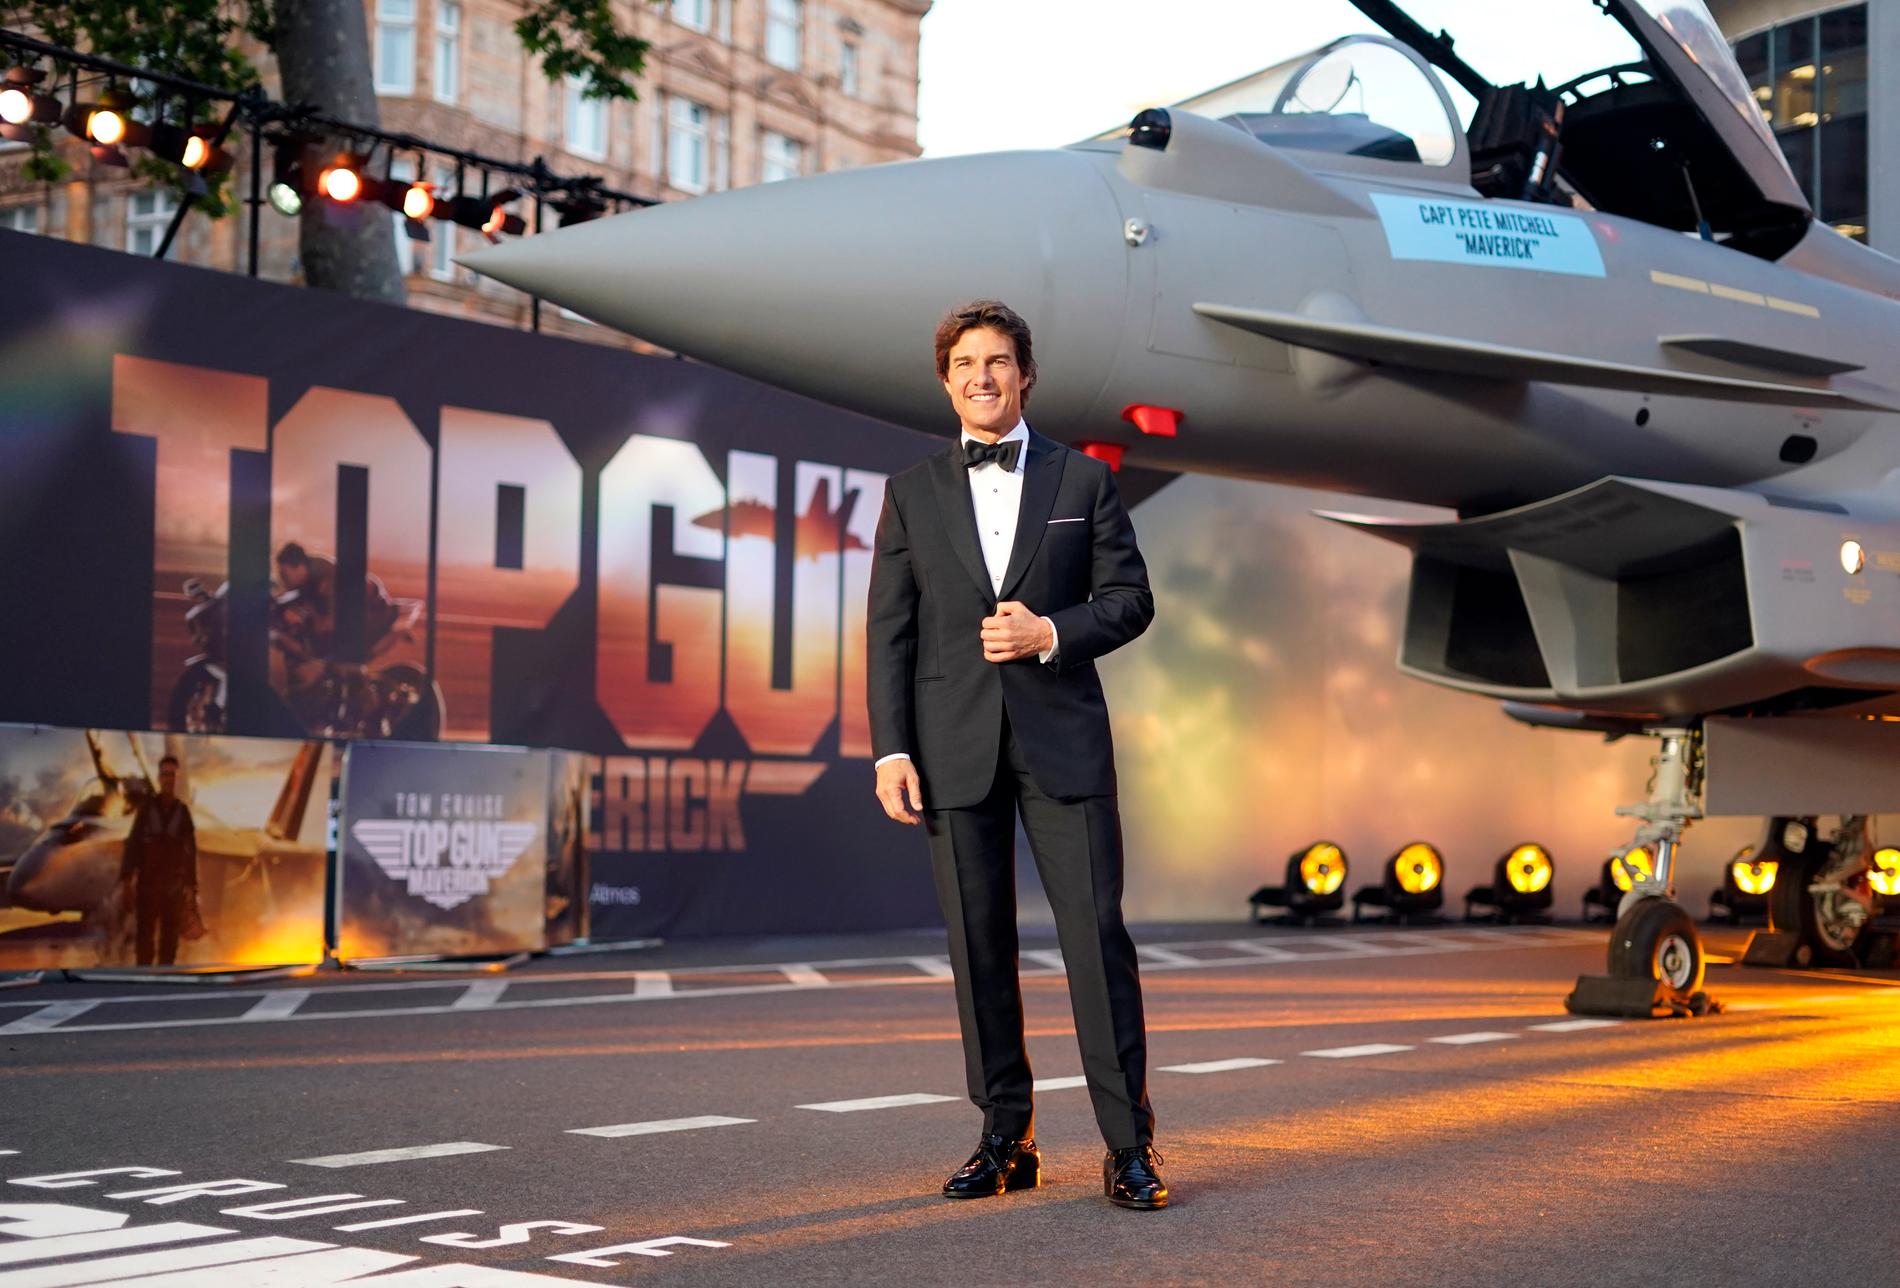 Tom Cruise tjänade 113 miljoner kronor på biljettintäkter för ”Top gun: Maverick”.